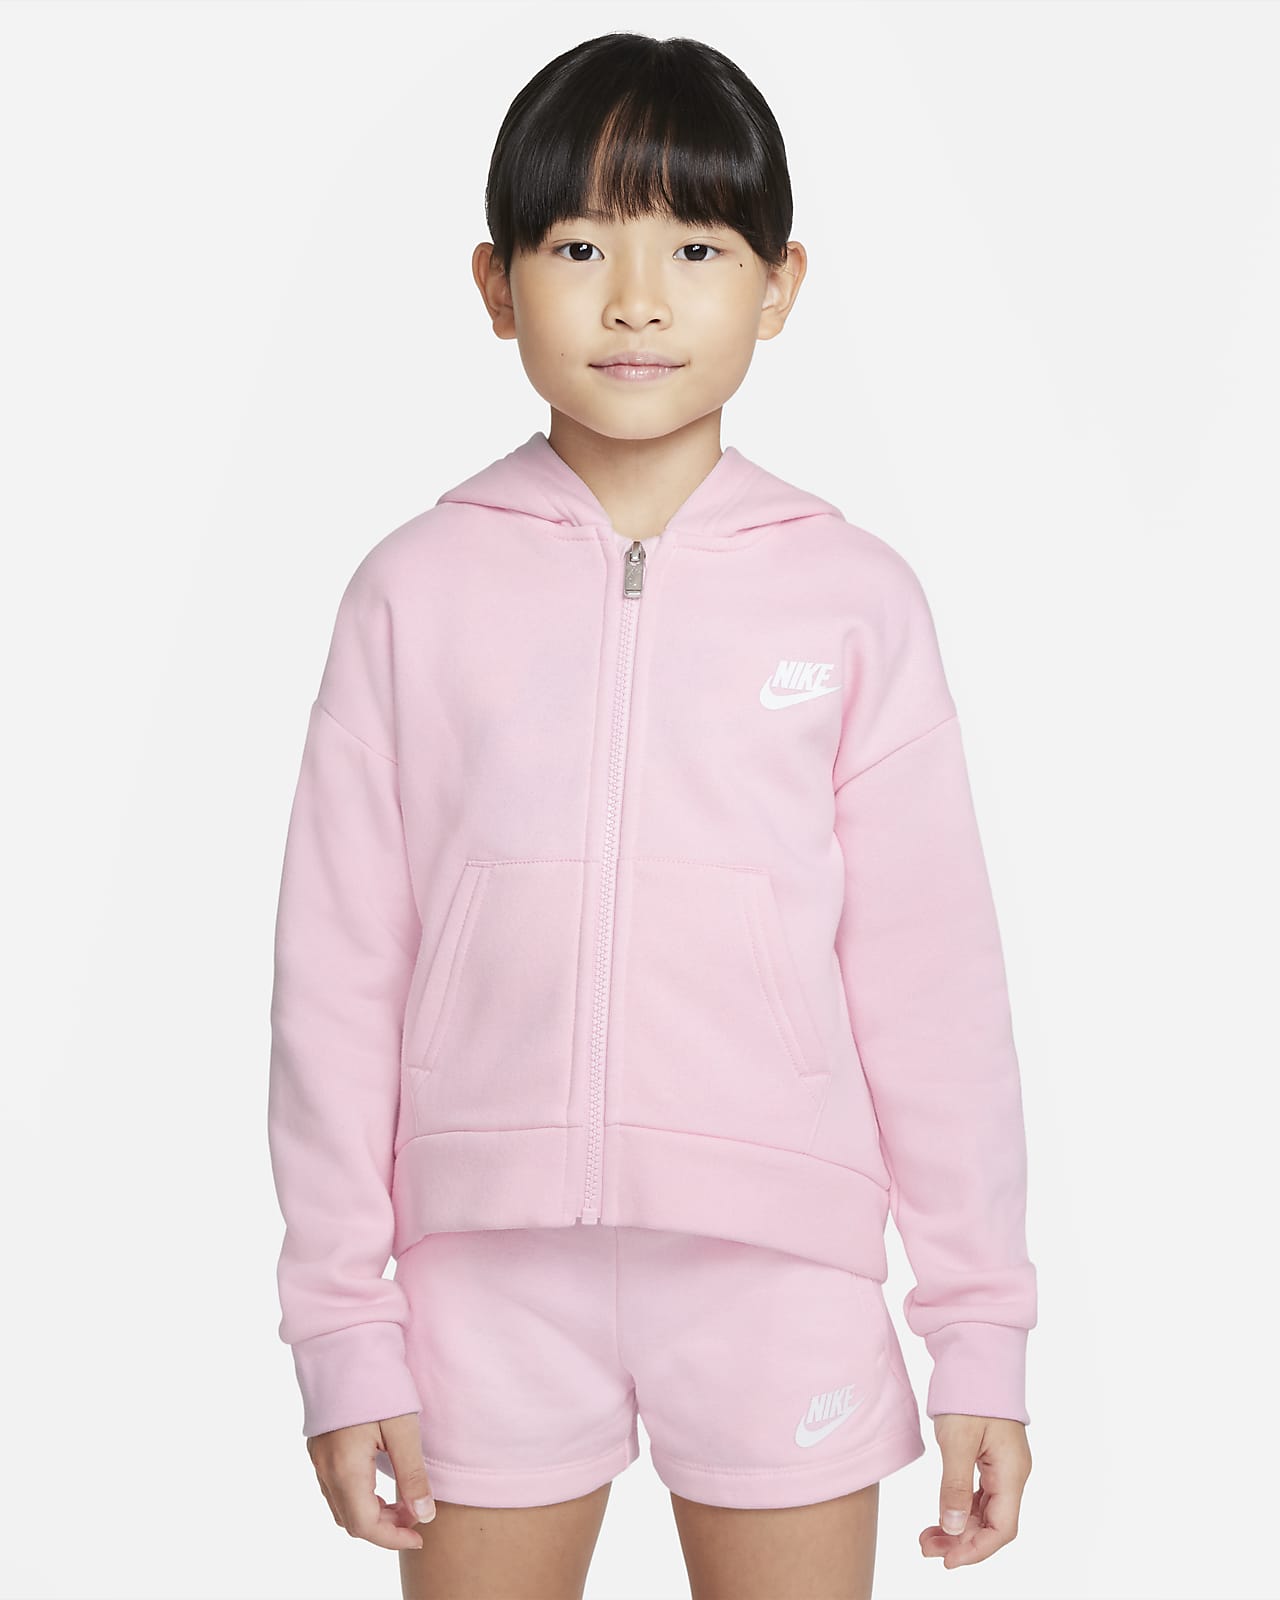 Μπλούζα με κουκούλα και φερμουάρ σε όλο το μήκος Nike Sportswear Club Fleece για μικρά παιδιά